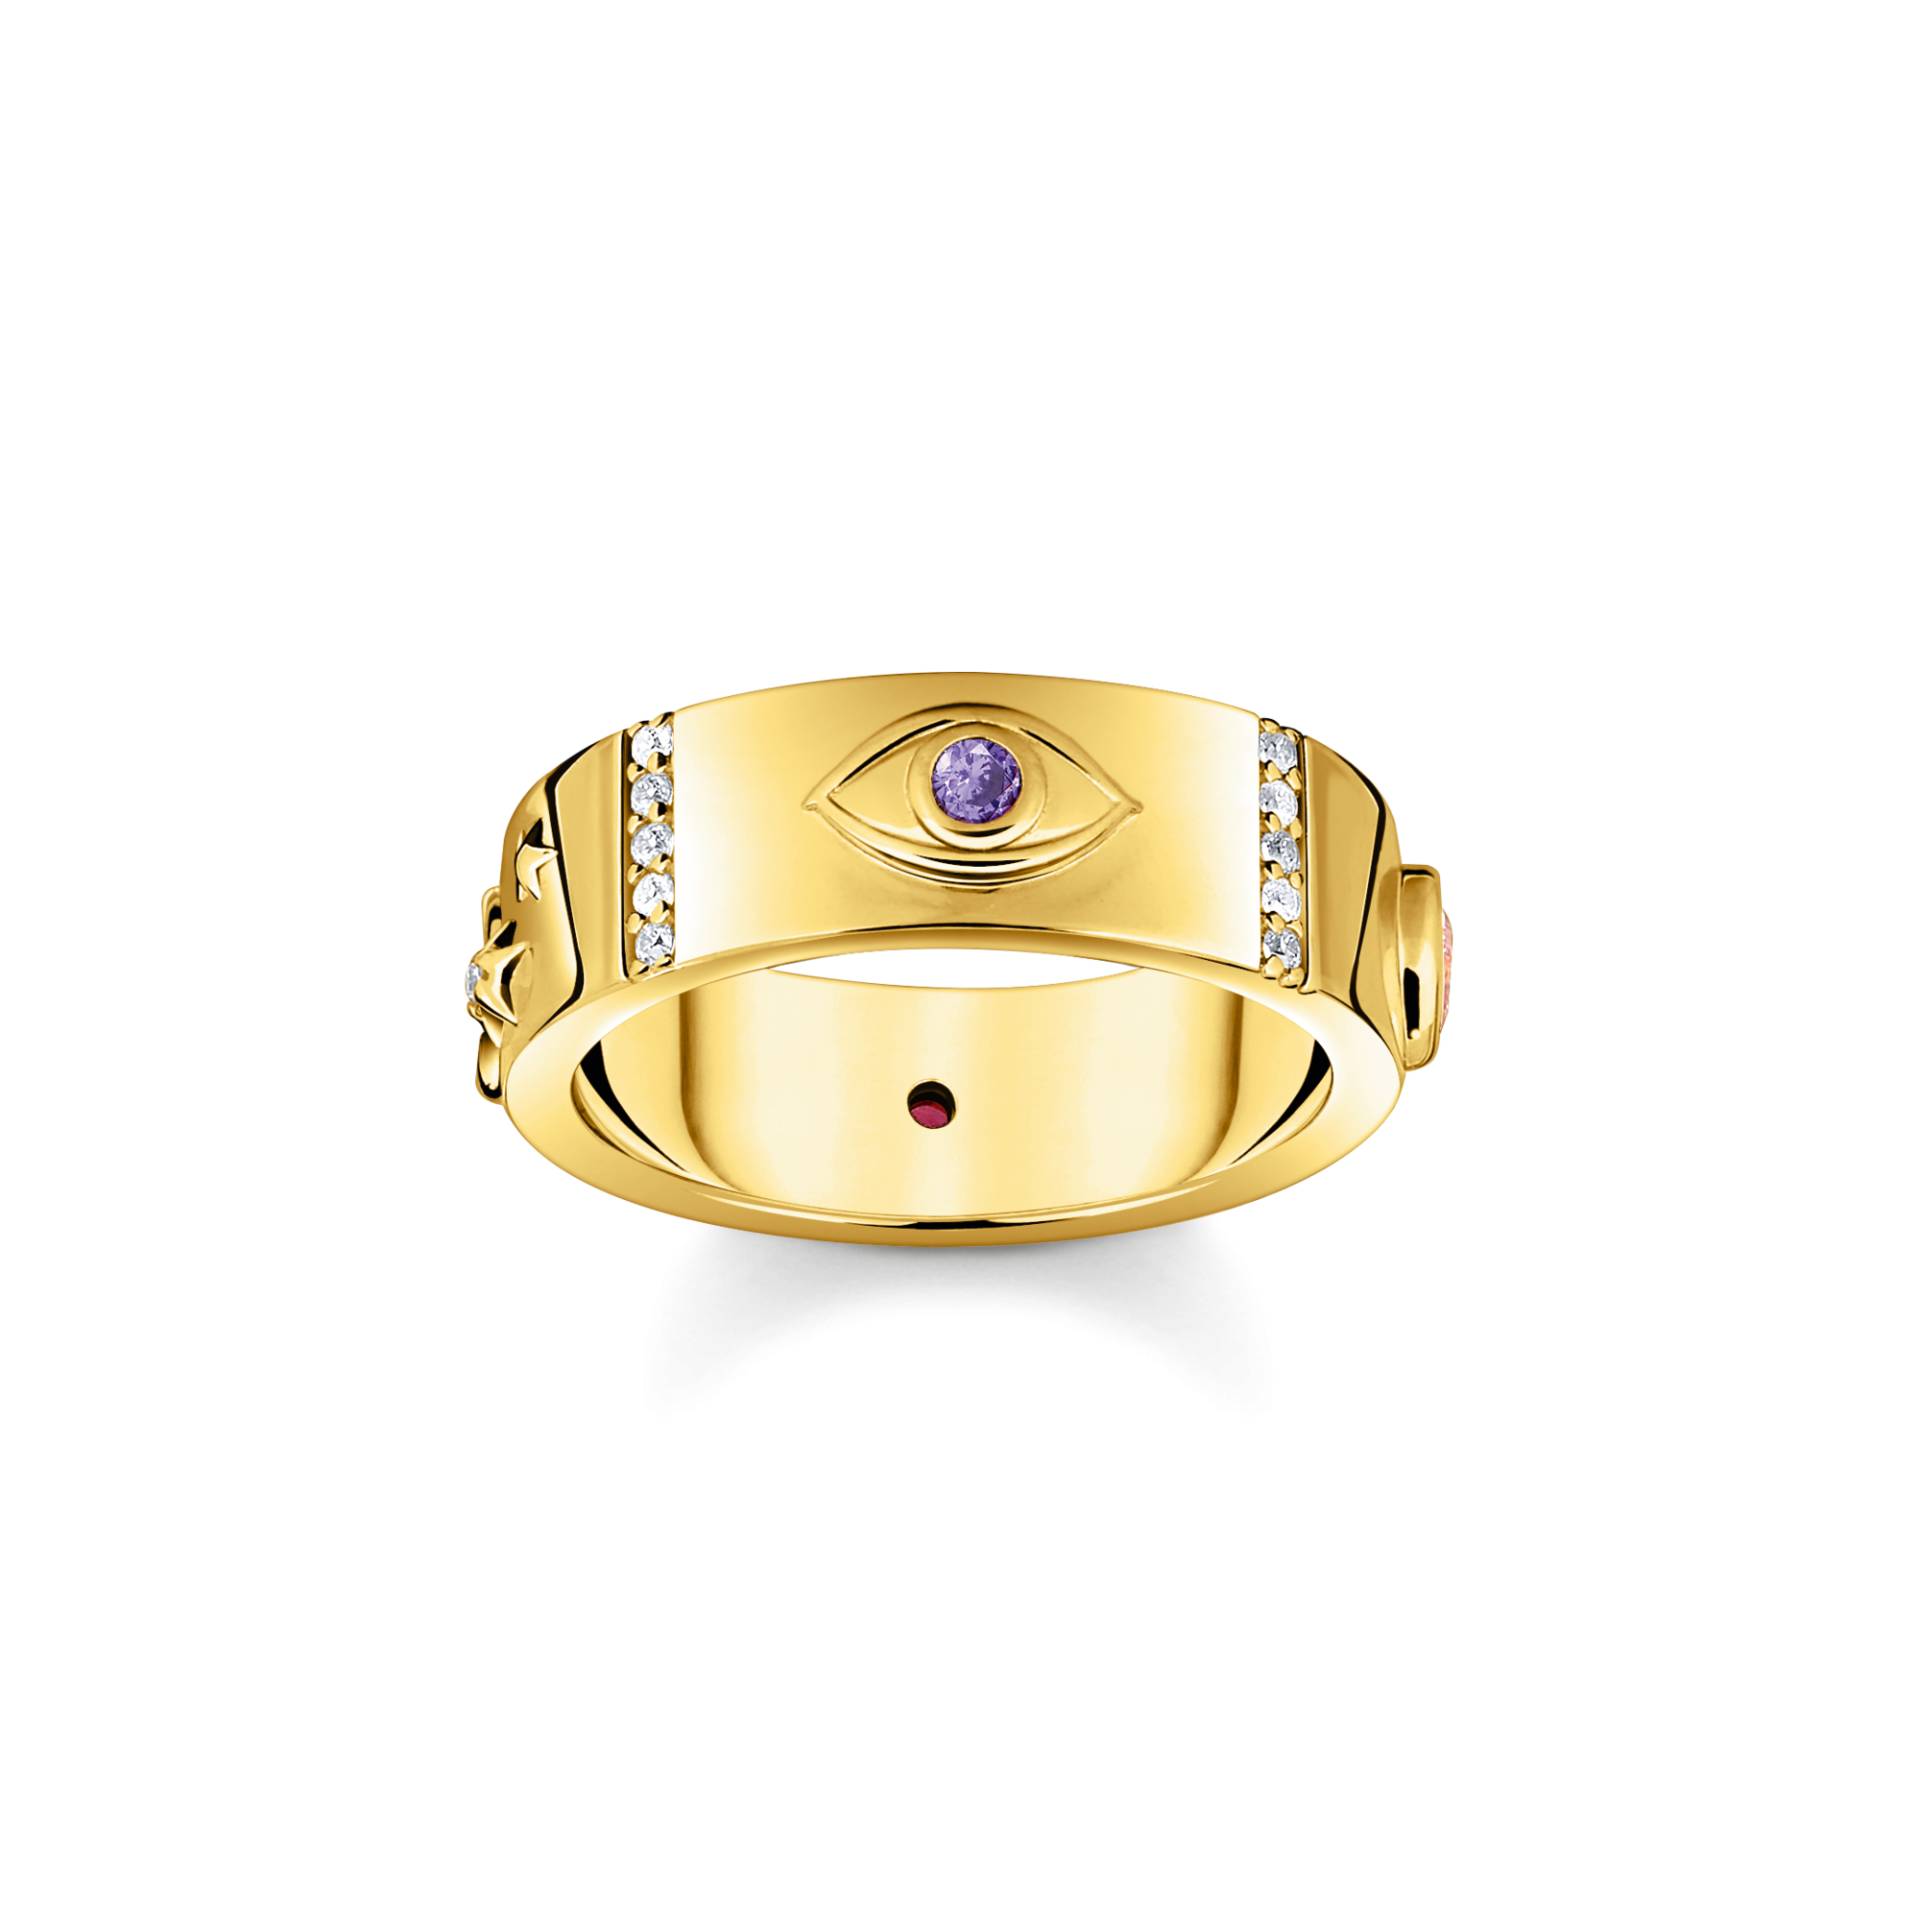 Thomas Sabo Ring mit kosmischen Symbolen und bunten Steinen vergoldet mehrfarbig TR2439-995-7-60 von Thomas Sabo